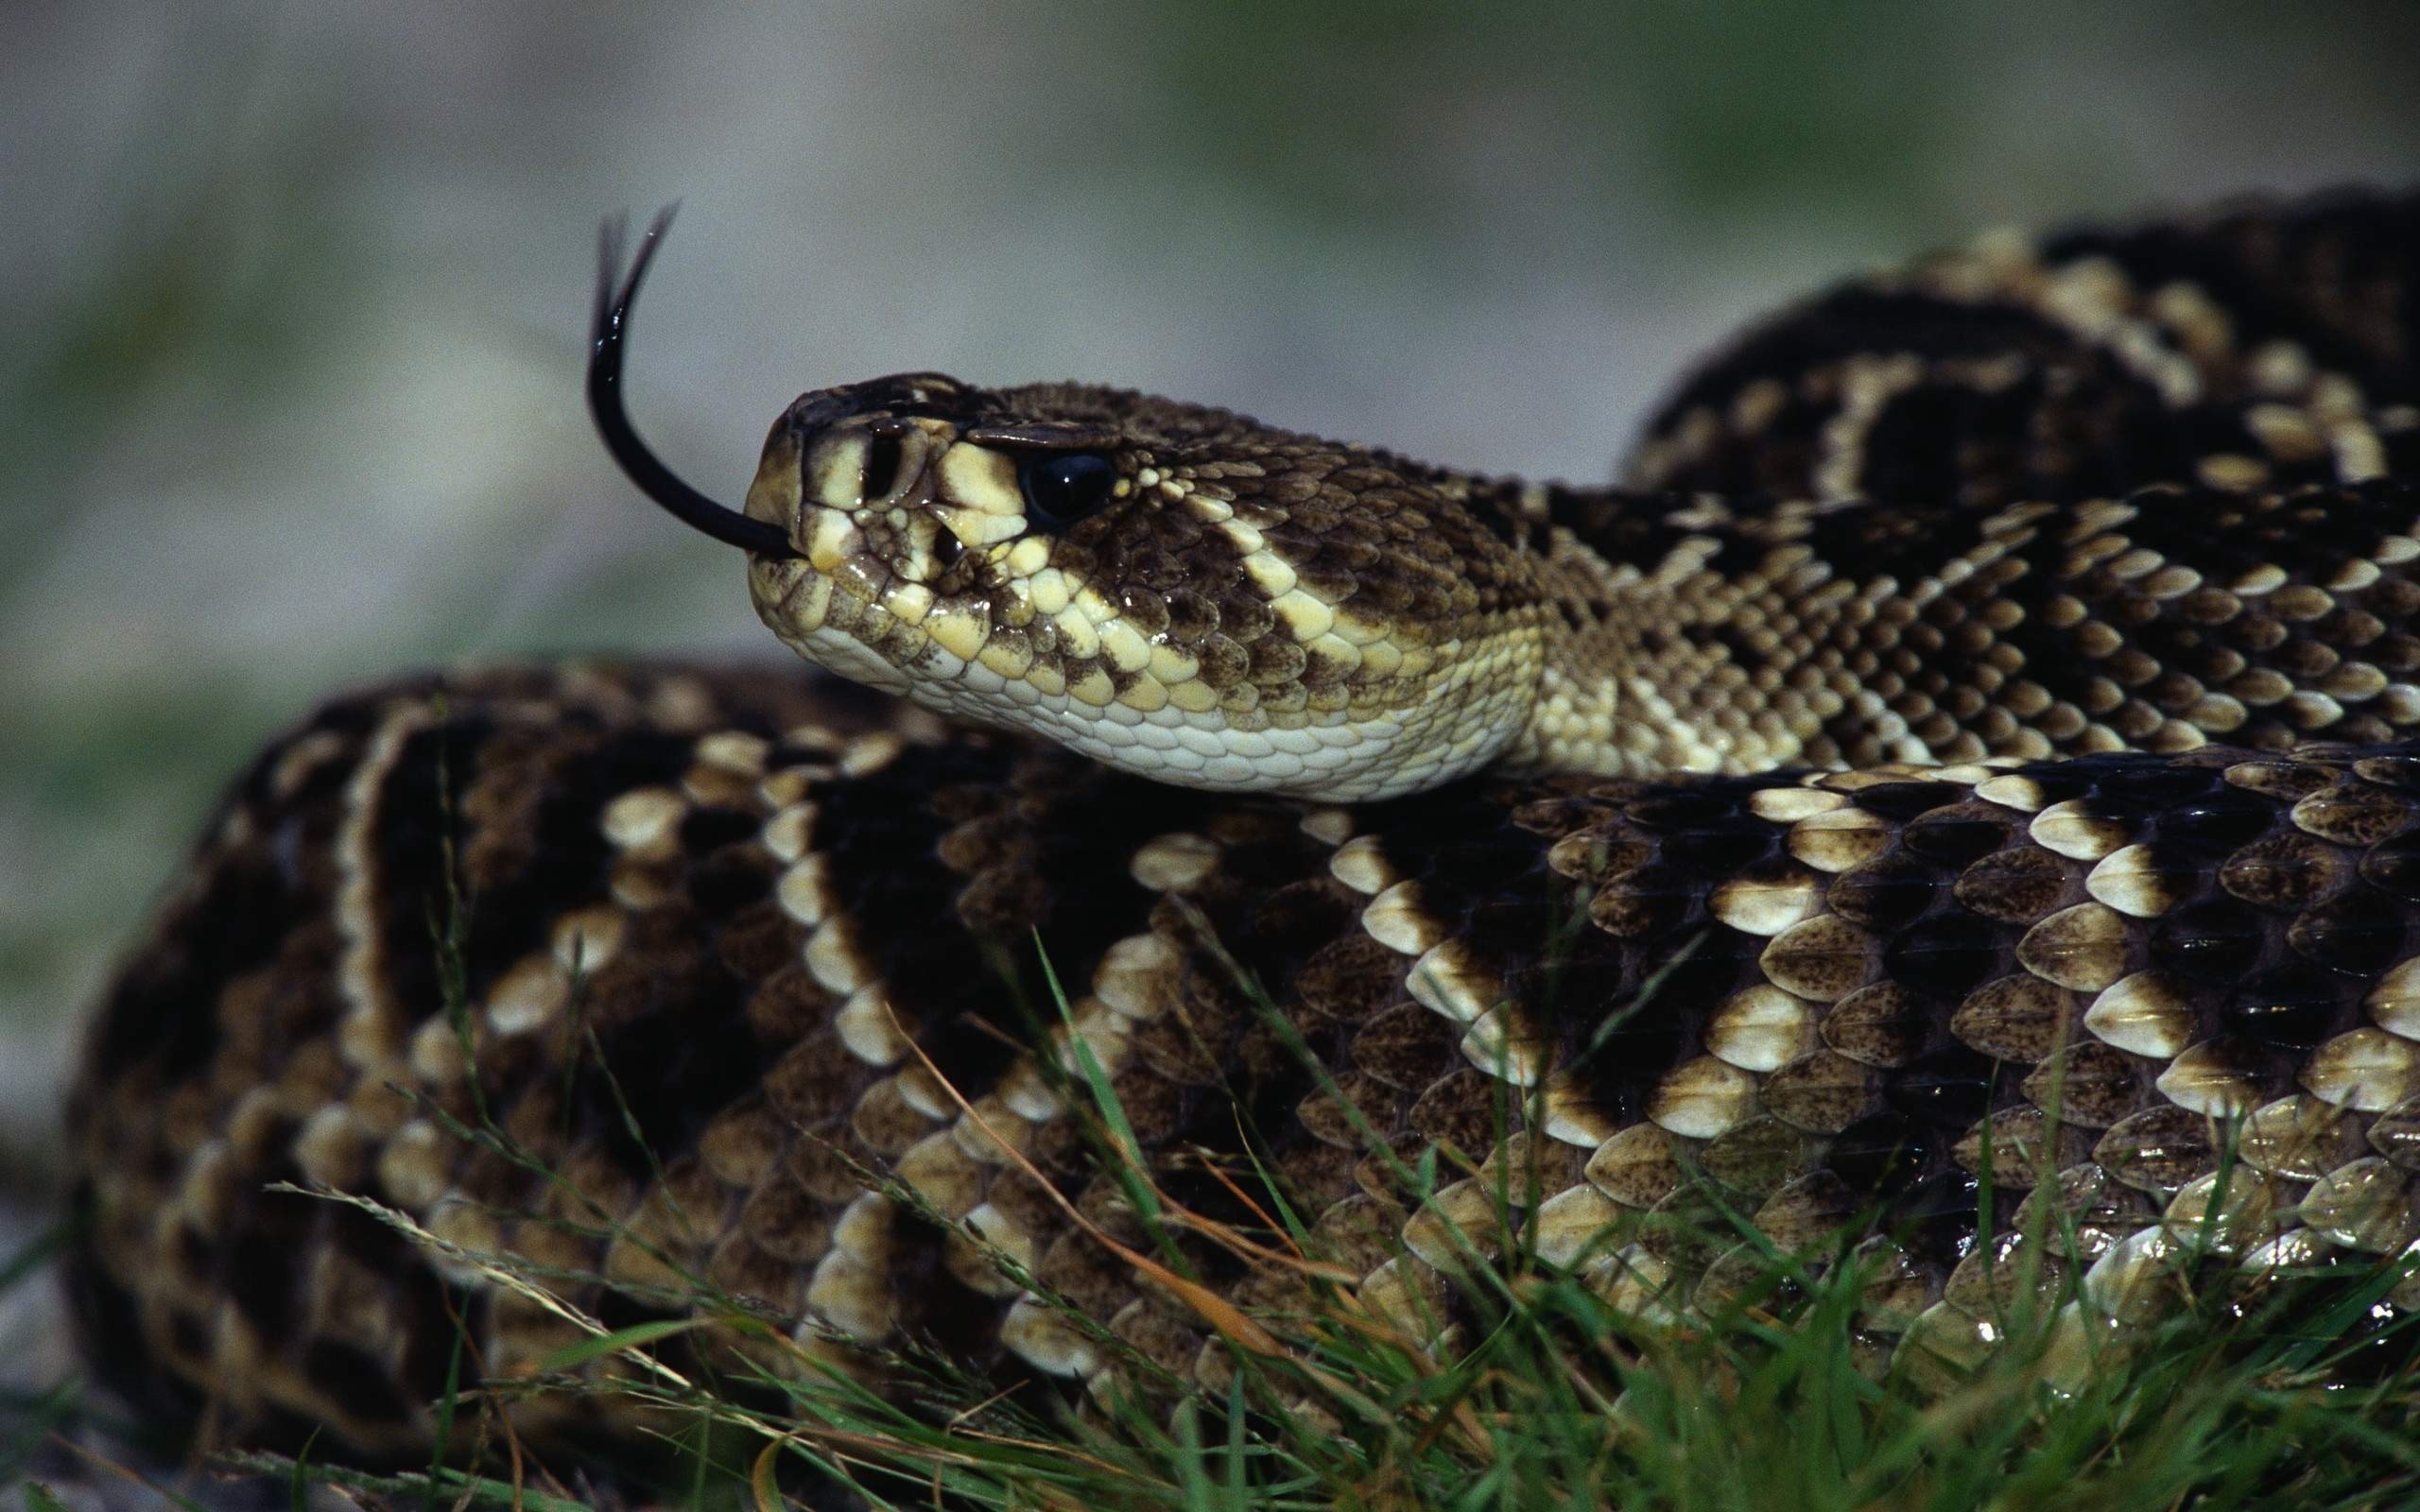 Venomous snake wallpaper, Dangerous reptiles, High-quality pictures, Desktop background, 2560x1600 HD Desktop